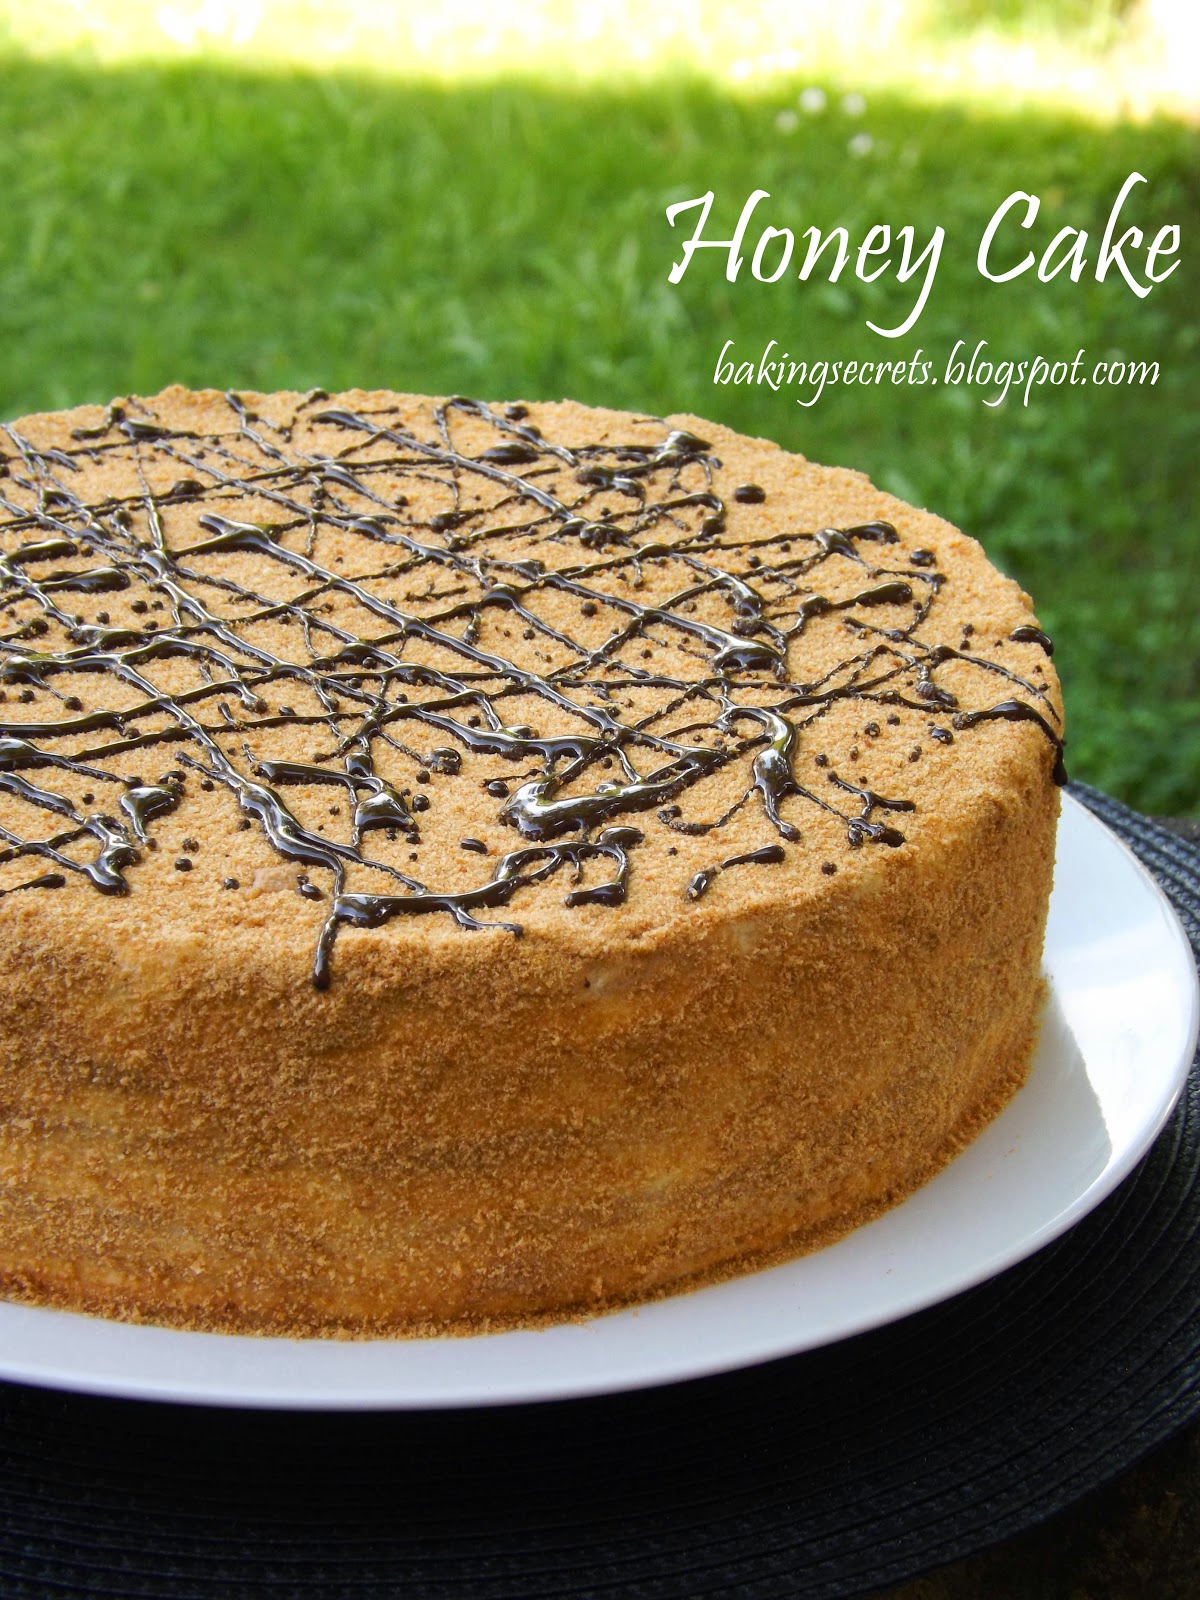 Baking Secrets: Daugiasluoksnis medaus tortas | Layered Honey Cake